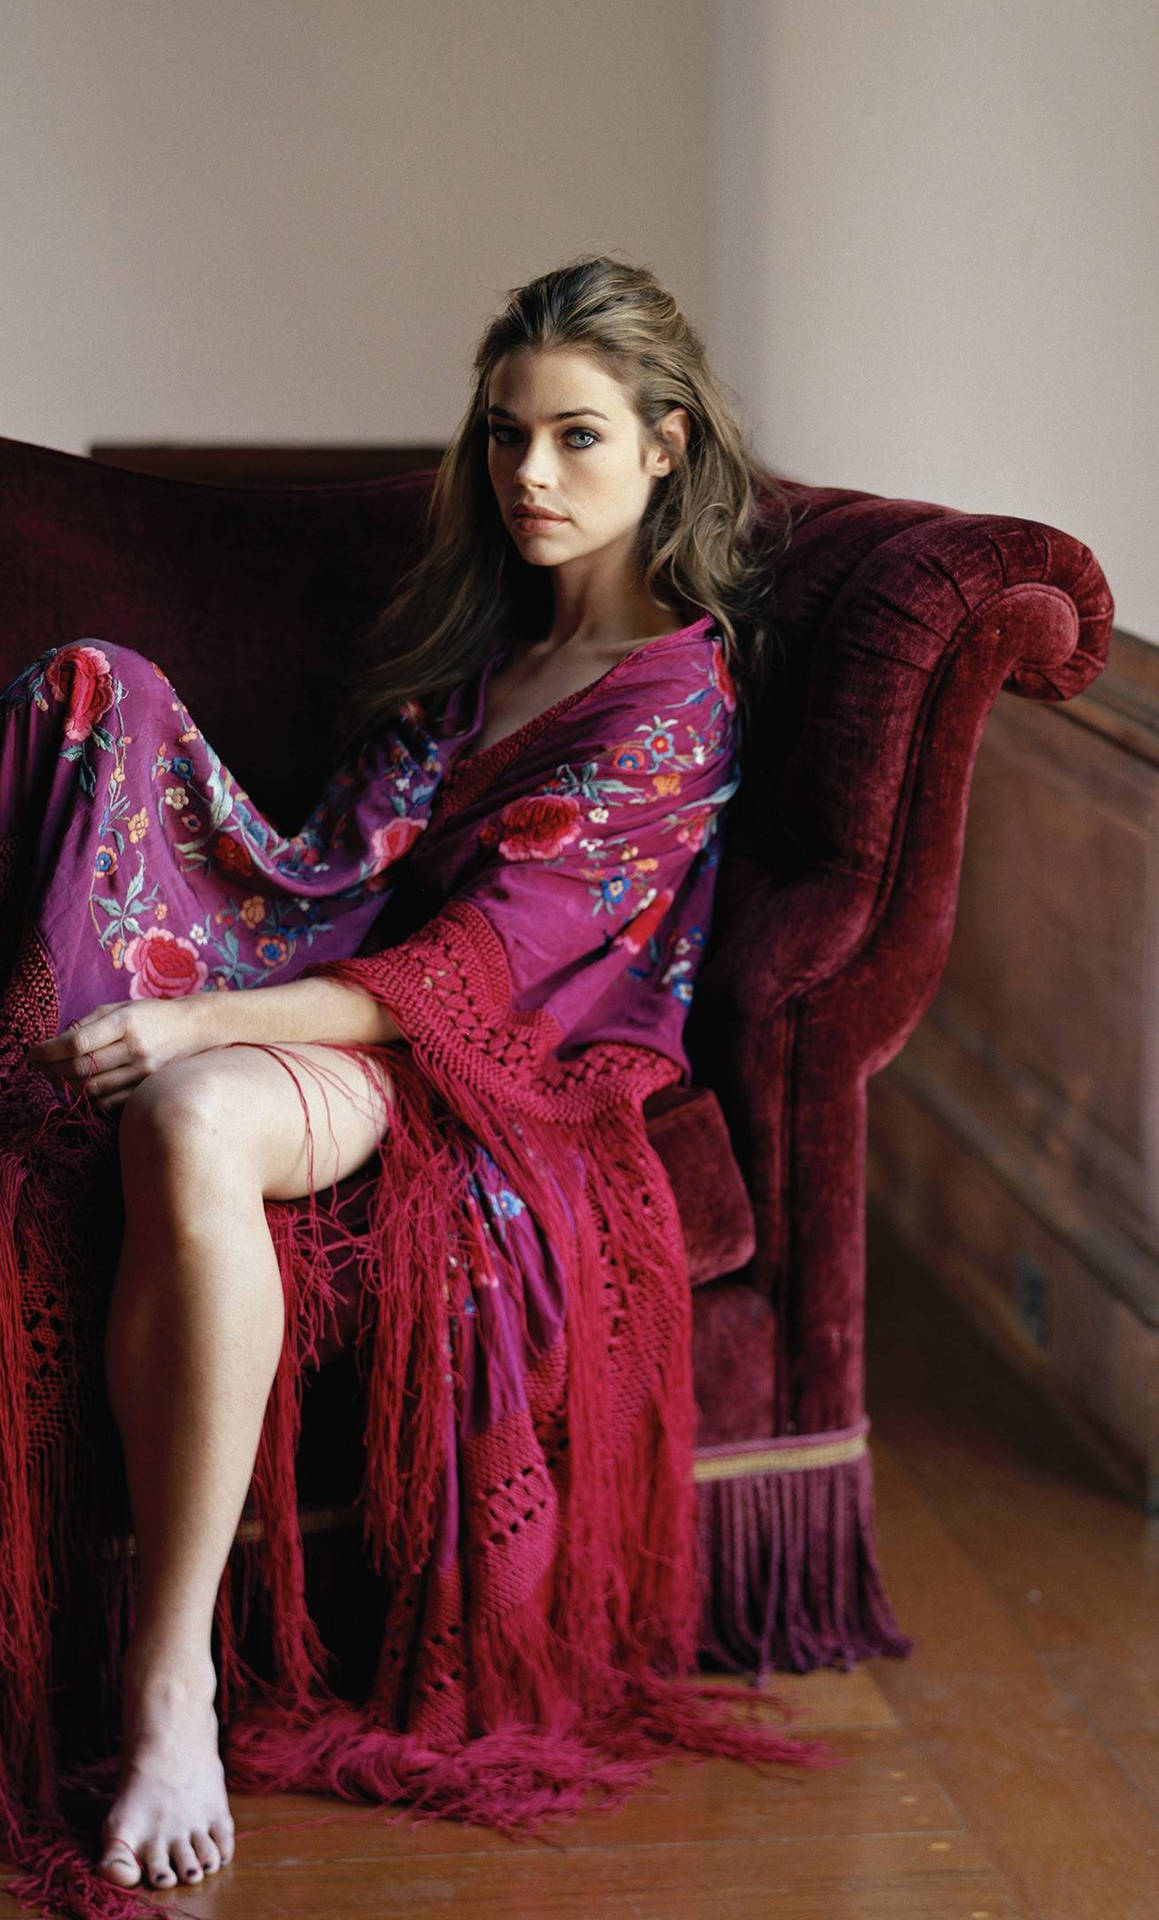 American Model Denise Richards Velvet Sofa Pose Background